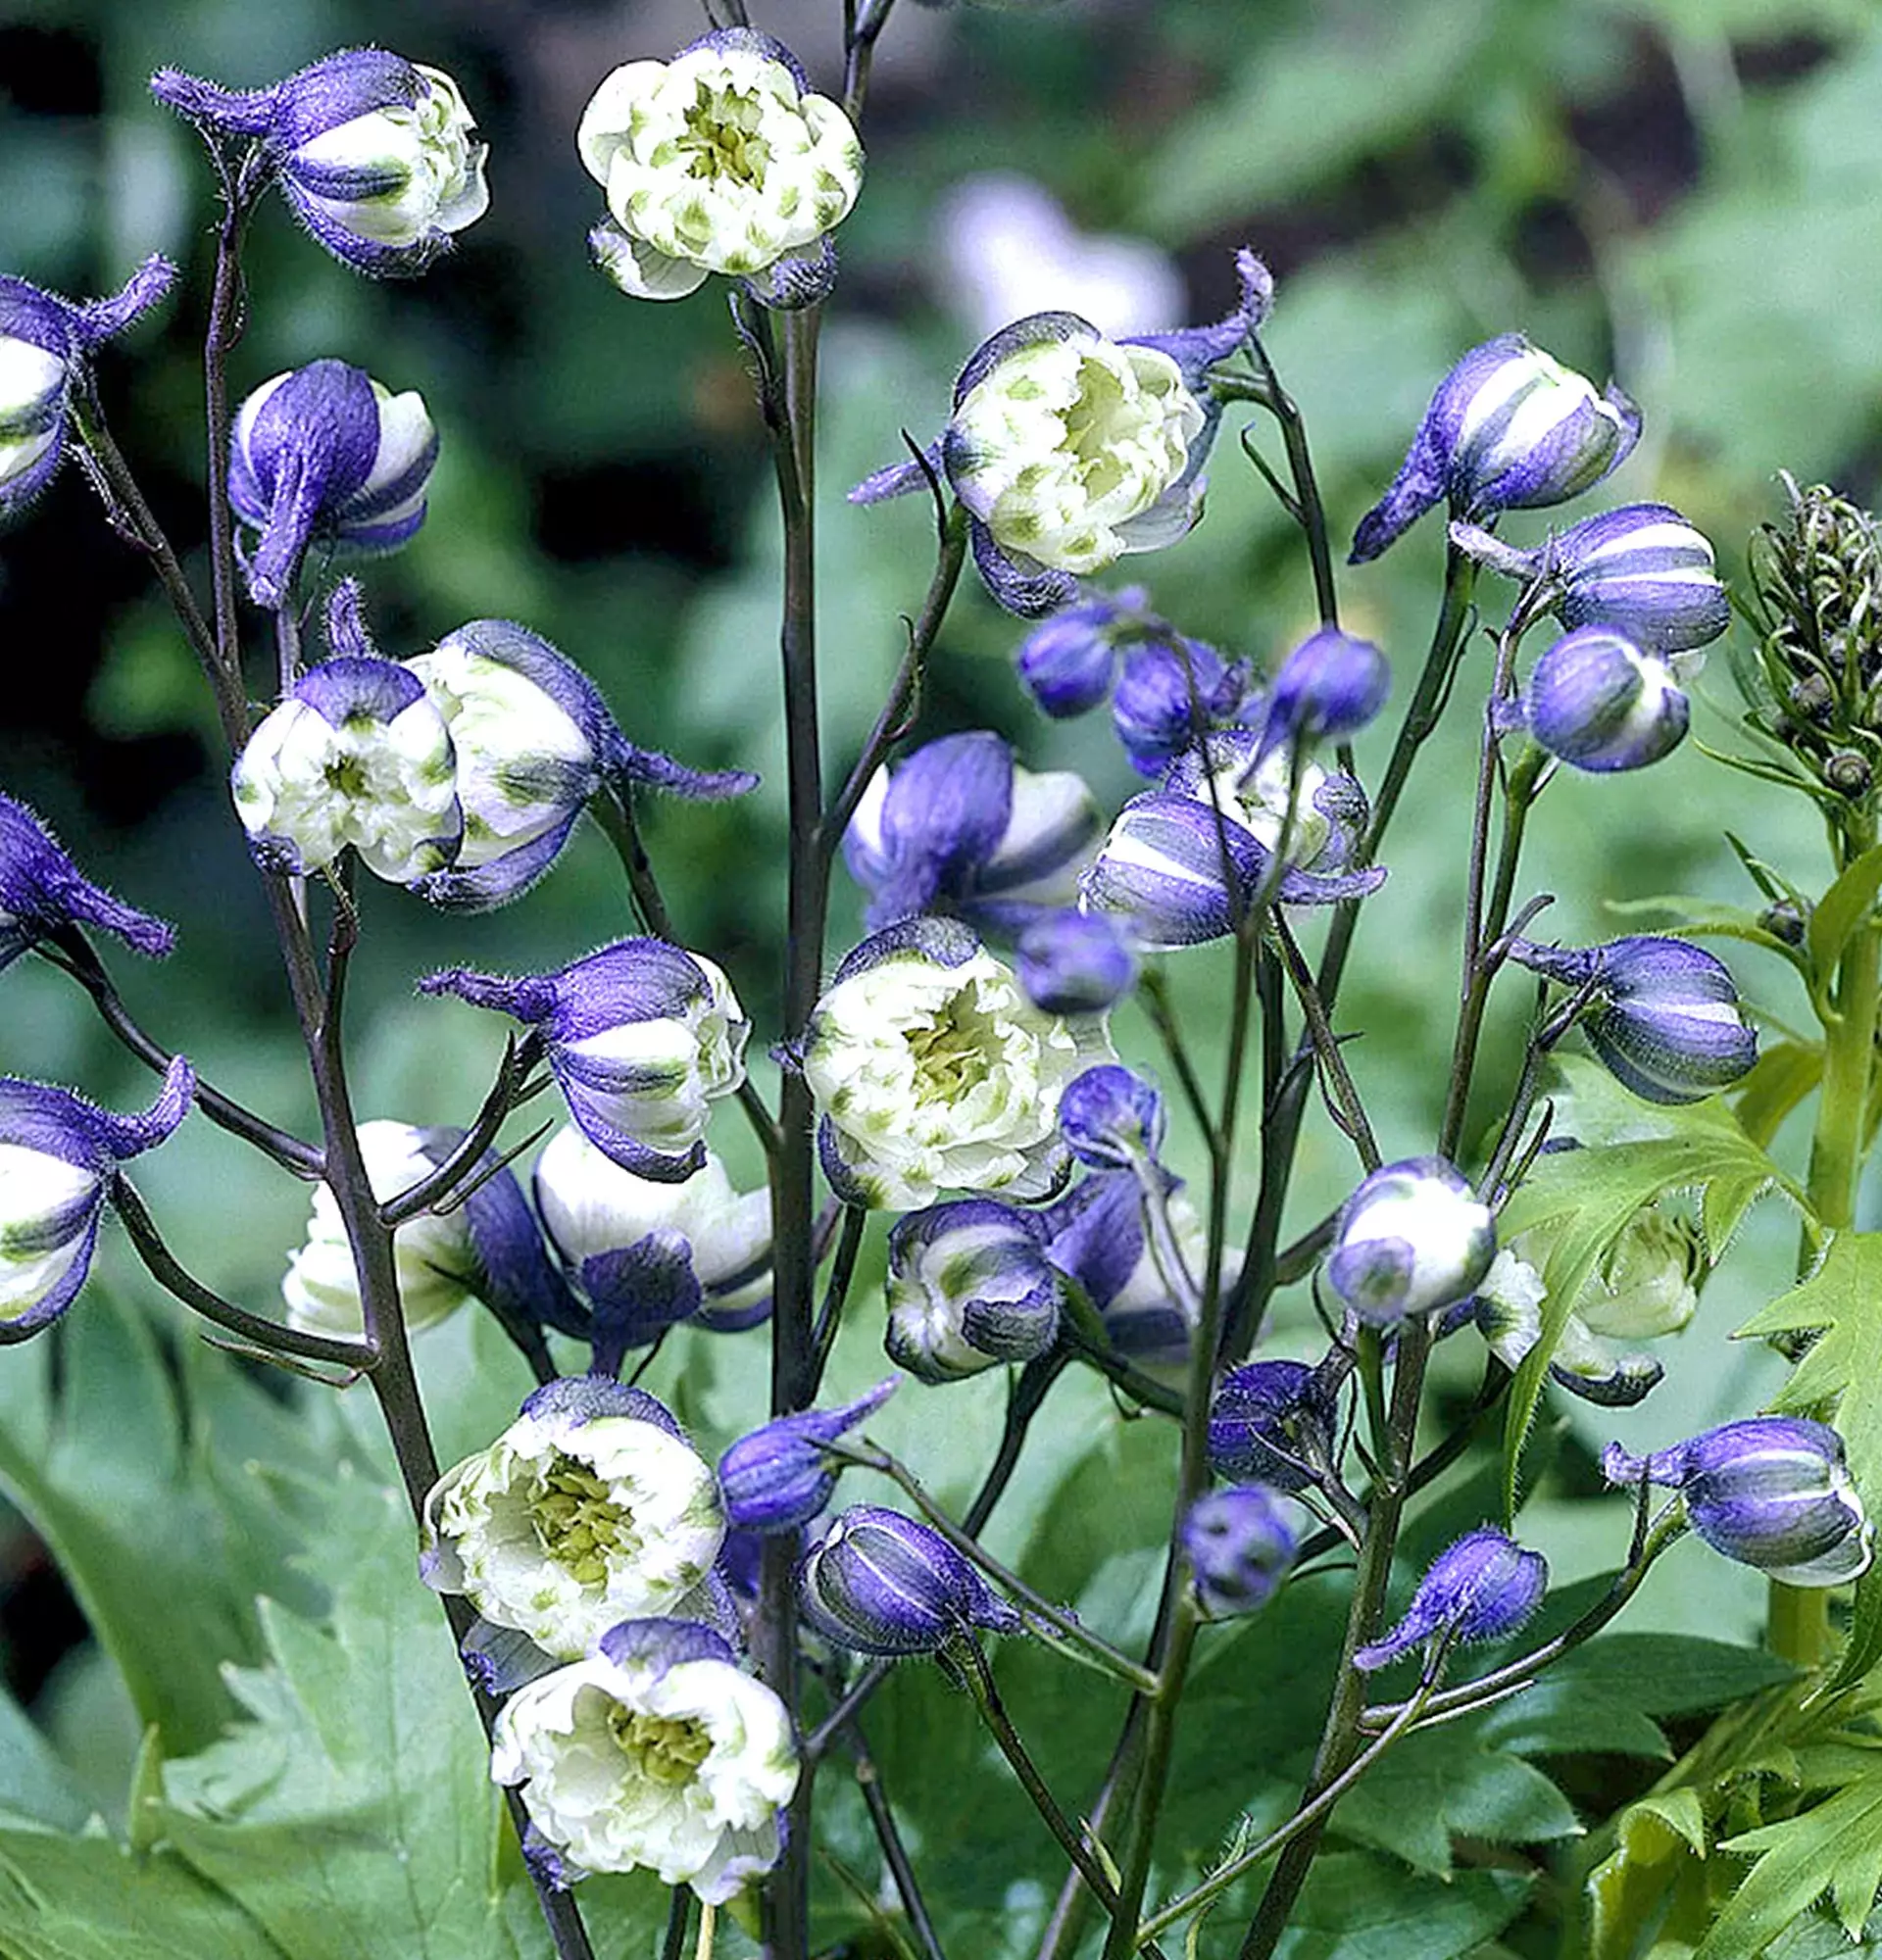 Delphinium biało-fioletowe zdjęcie - ostroga